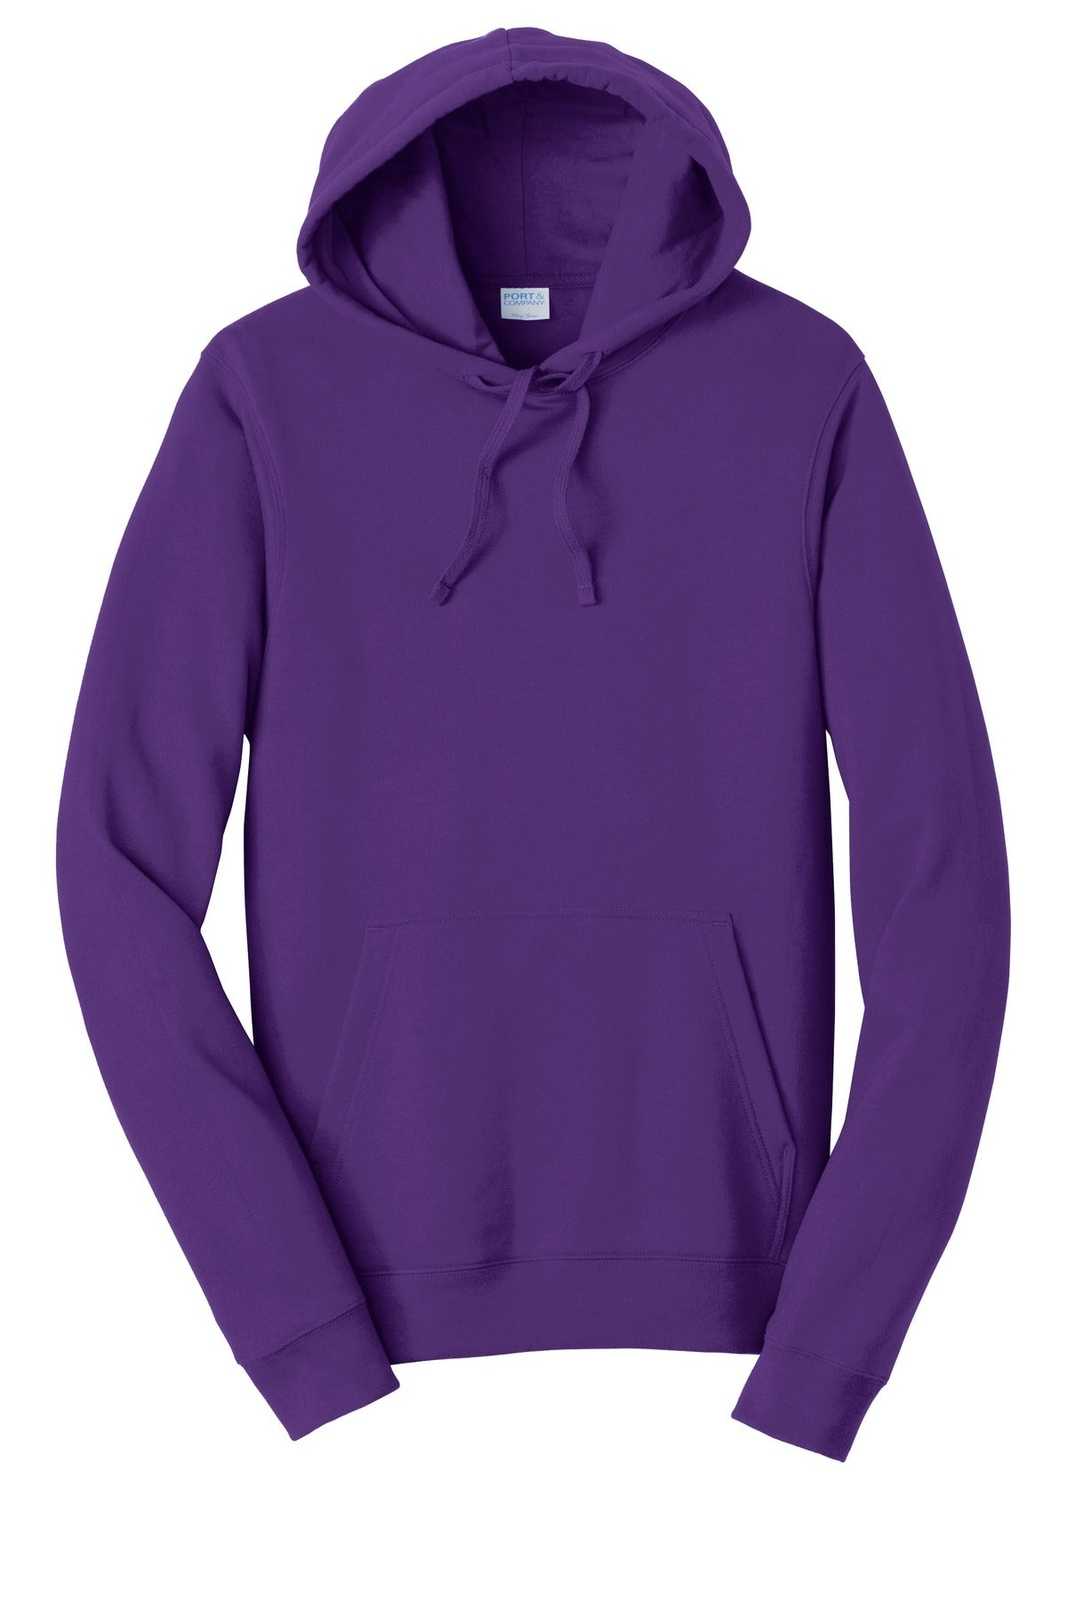 Port &amp; Company PC850H Fan Favorite Fleece Pullover Hooded Sweatshirt - Team Purple - HIT a Double - 5